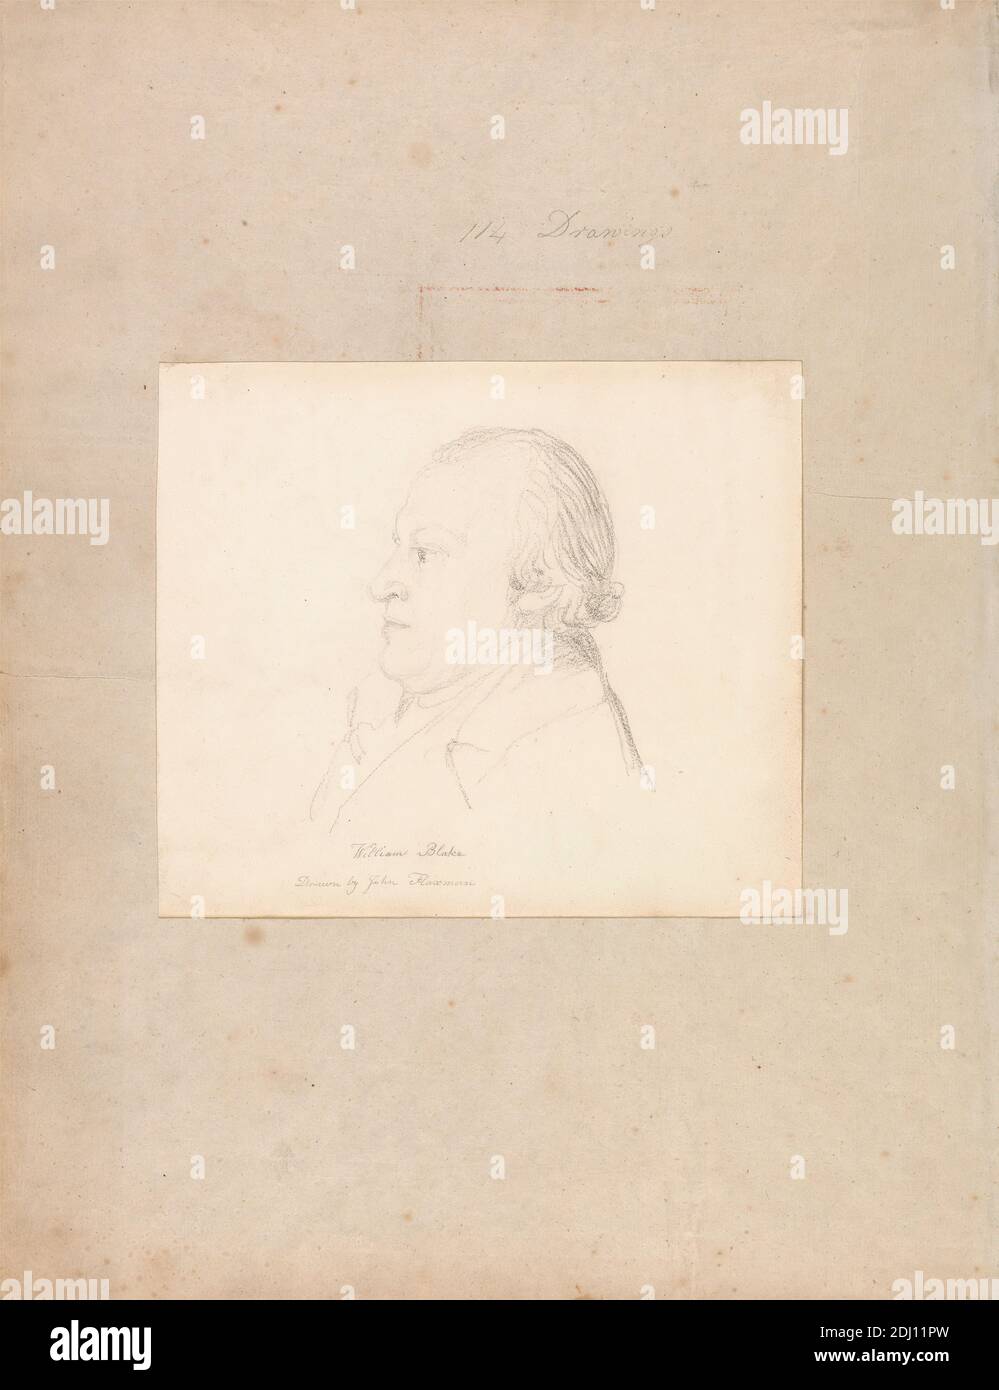 Portrait de William Blake, John Flaxman, 1755–1826, Britannique, env. 1804, Graphite sur papier vélin moyen, légèrement texturé, crème, feuille: 7 x 8 1/8 pouces (17.8 x 20.6 cm) et support: 16 5/8 x 12 7/8 pouces (42.2 x 32.7 cm), artiste, graveur (graveur), homme, poète, portrait, profil Banque D'Images